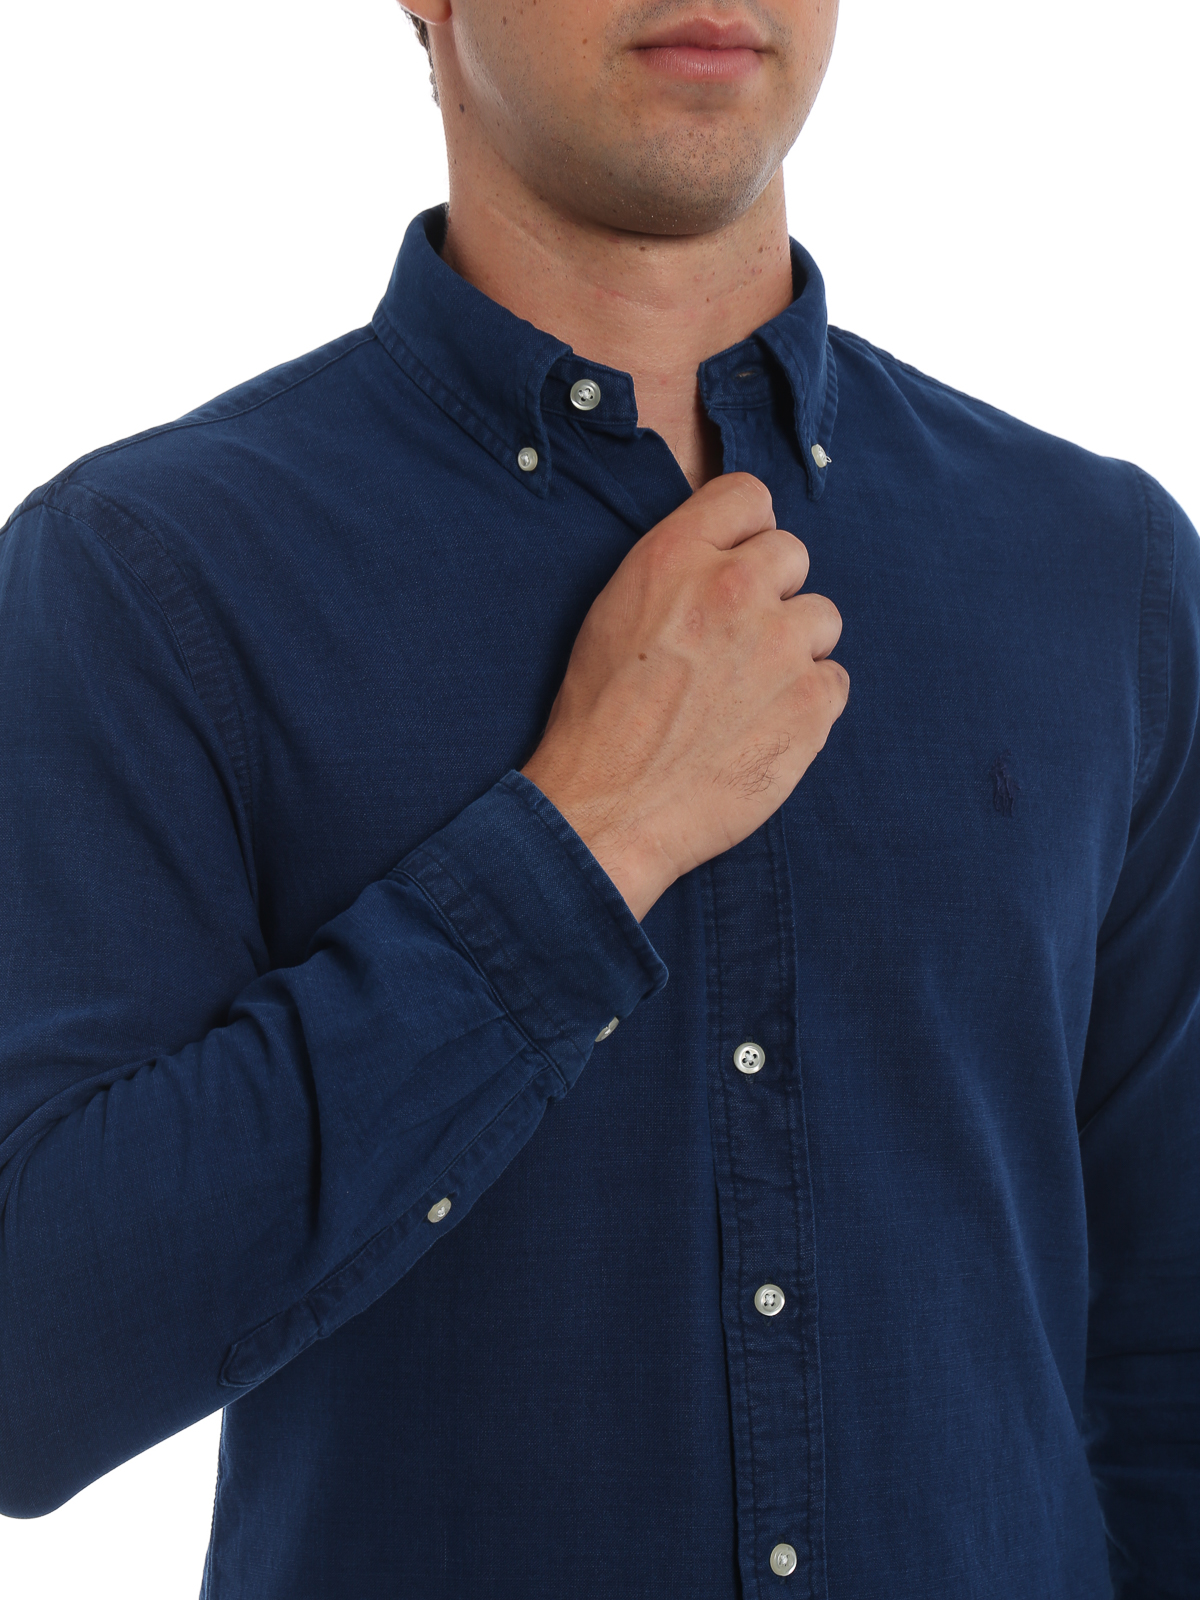 ralph lauren slim fit button down shirt